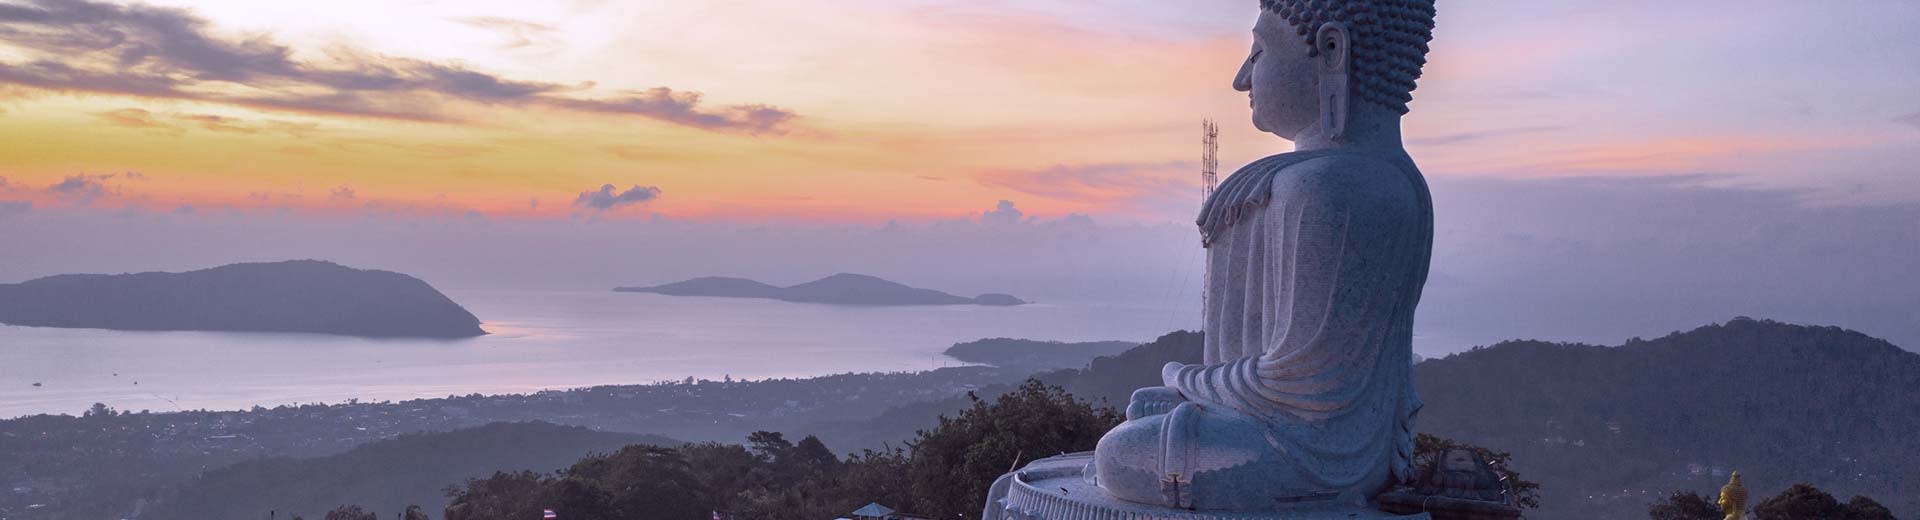 一座宗教雕像坐落在山顶，在黄昏的半明半暗中俯瞰着海岸线。